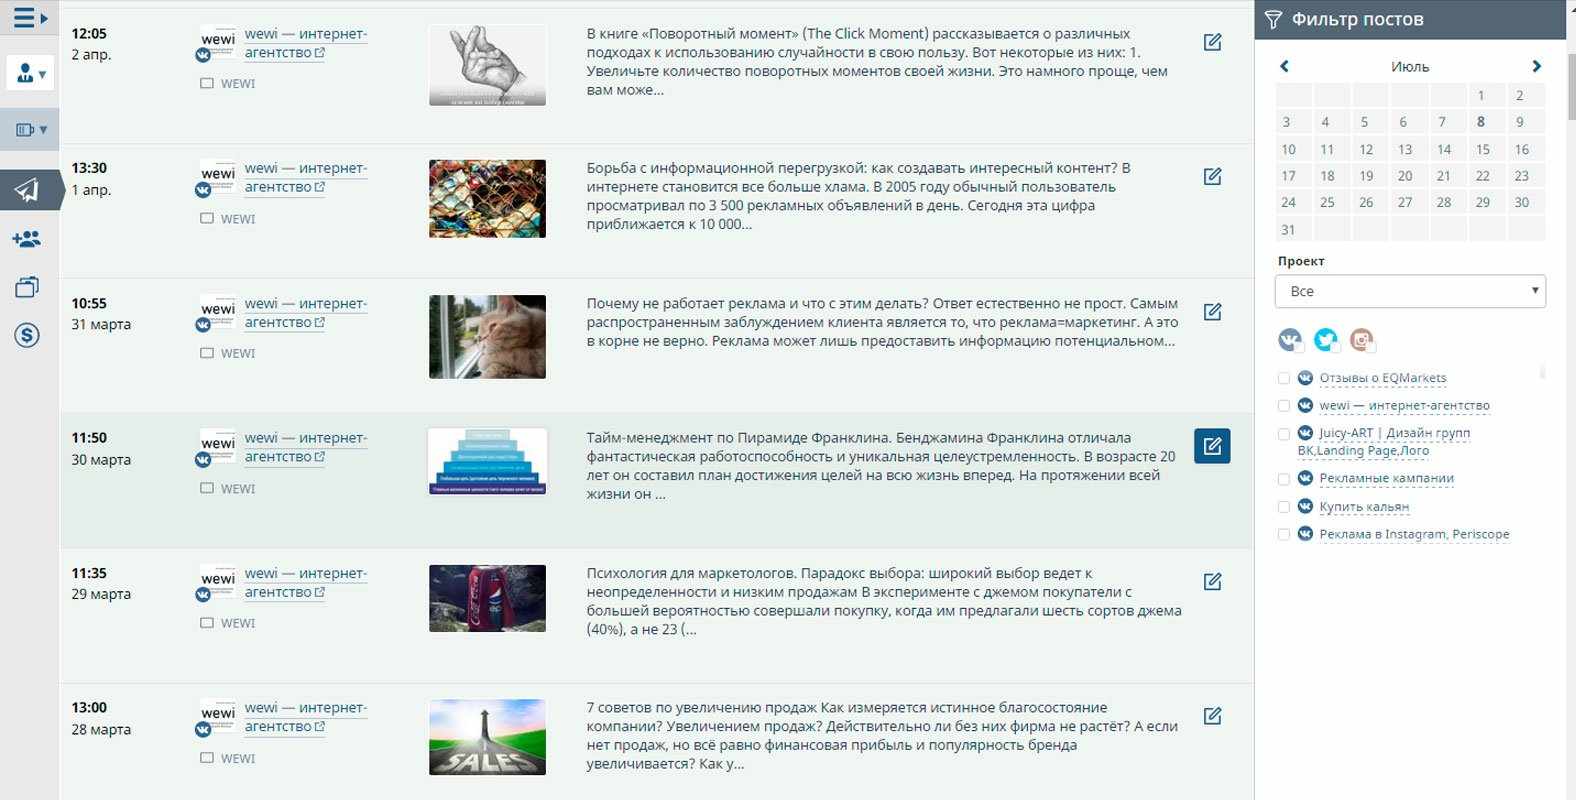 Отложенные публикации Вконтакте